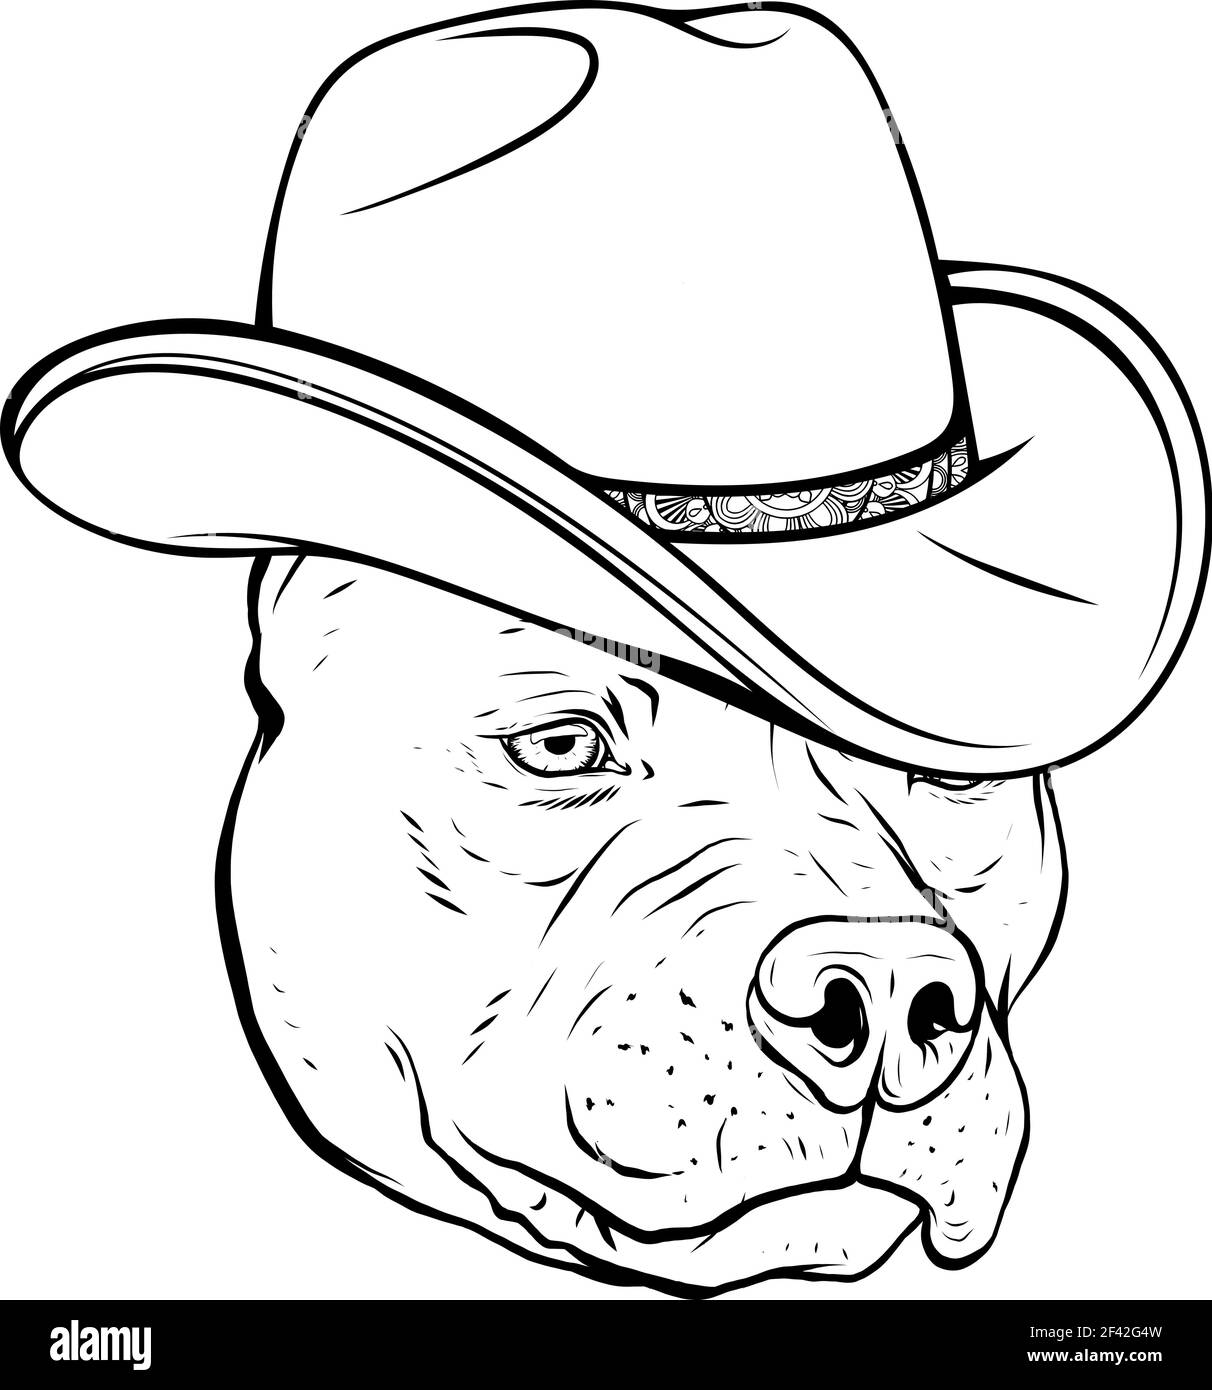 dessinez en noir et blanc de la tête pitbull avec fedora illustration du vecteur hat Illustration de Vecteur